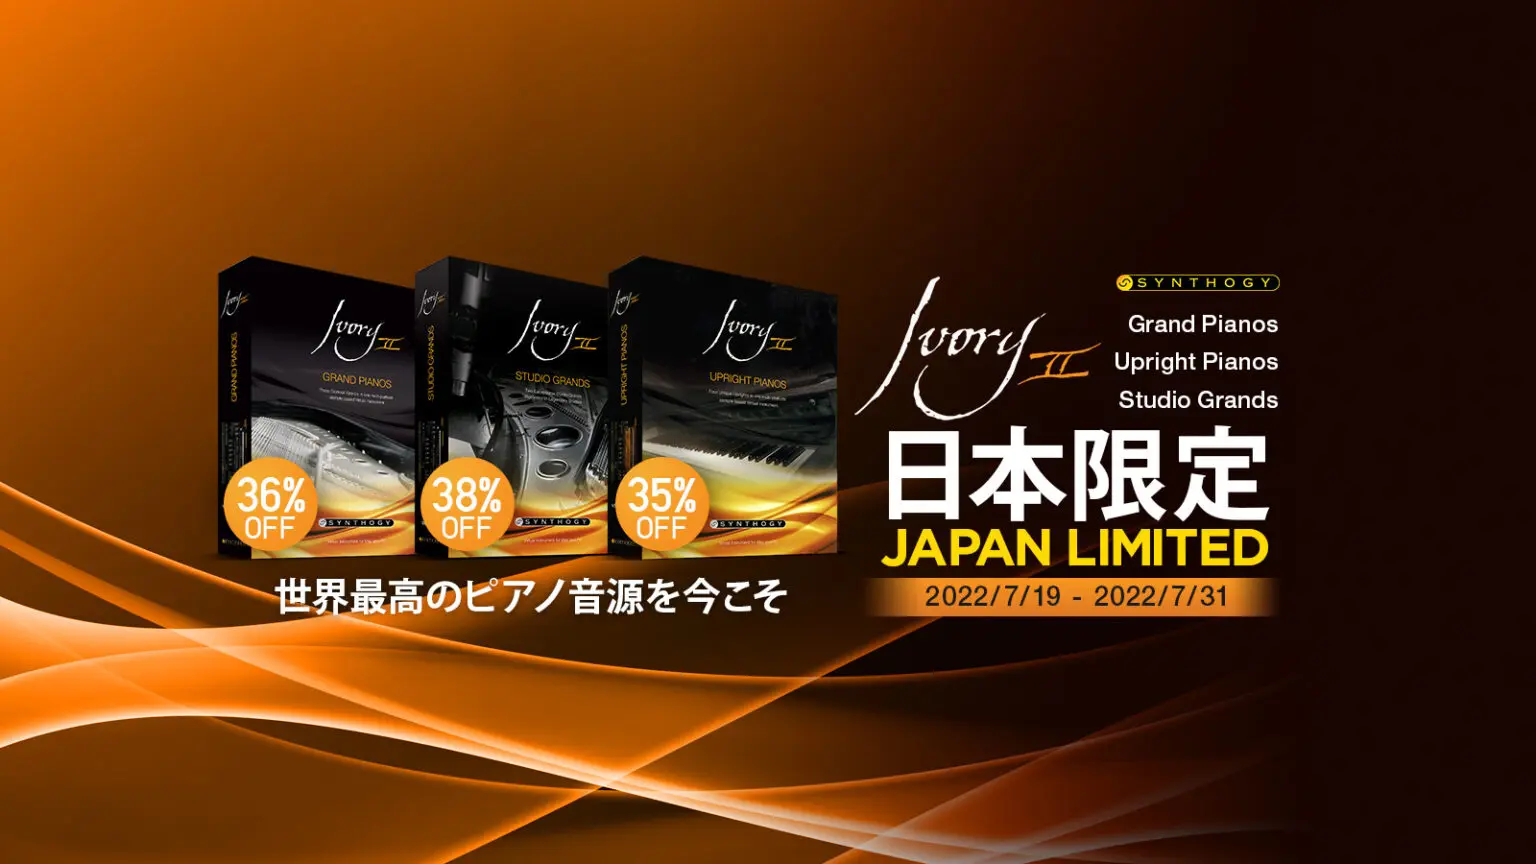 【最大38%FF】大人気ピアノ音源 Synthogy Ivory IIシリーズが日本限定セール中！